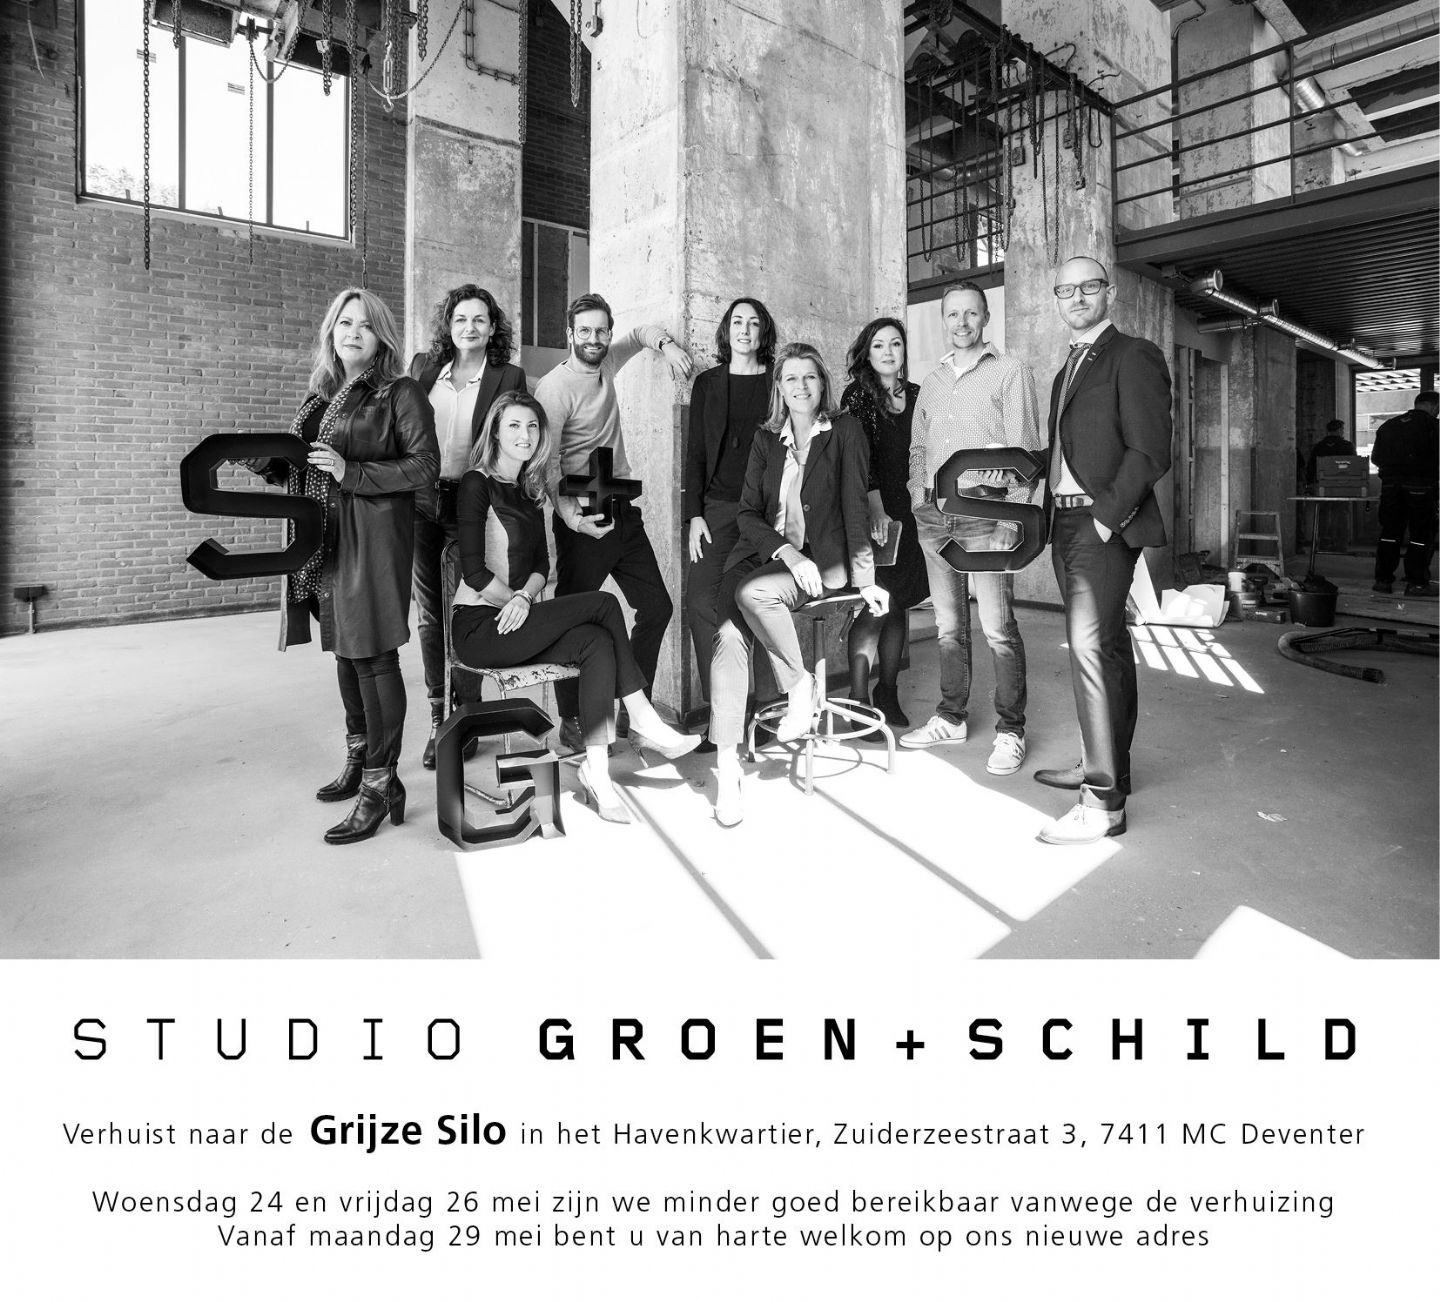 Studio Groen + Schild verhuist naar de Grijze silo